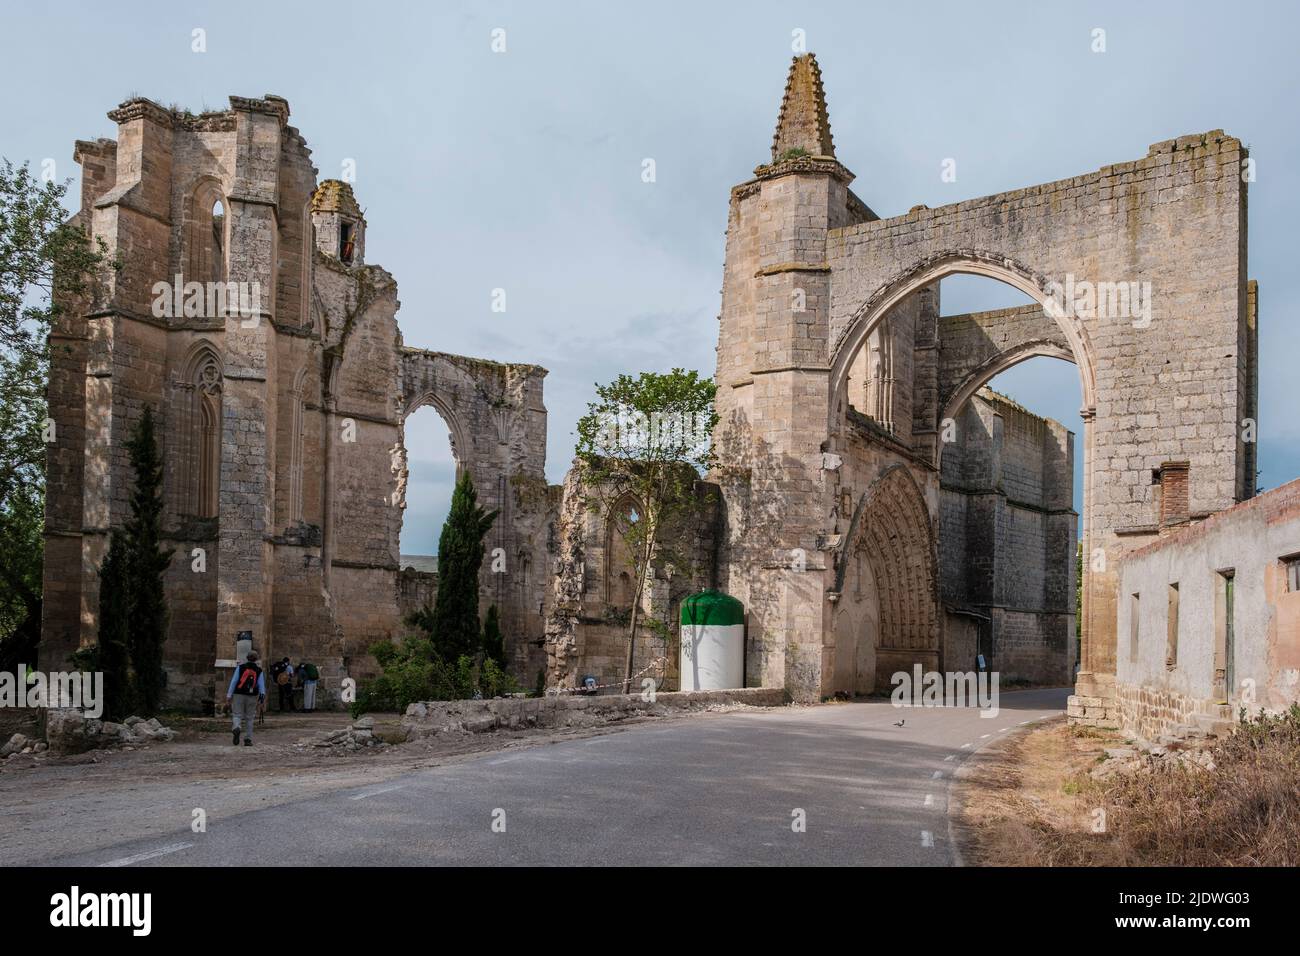 España, ruinas del monasterio de San Anton Abad. Castilla y León. Foto de stock